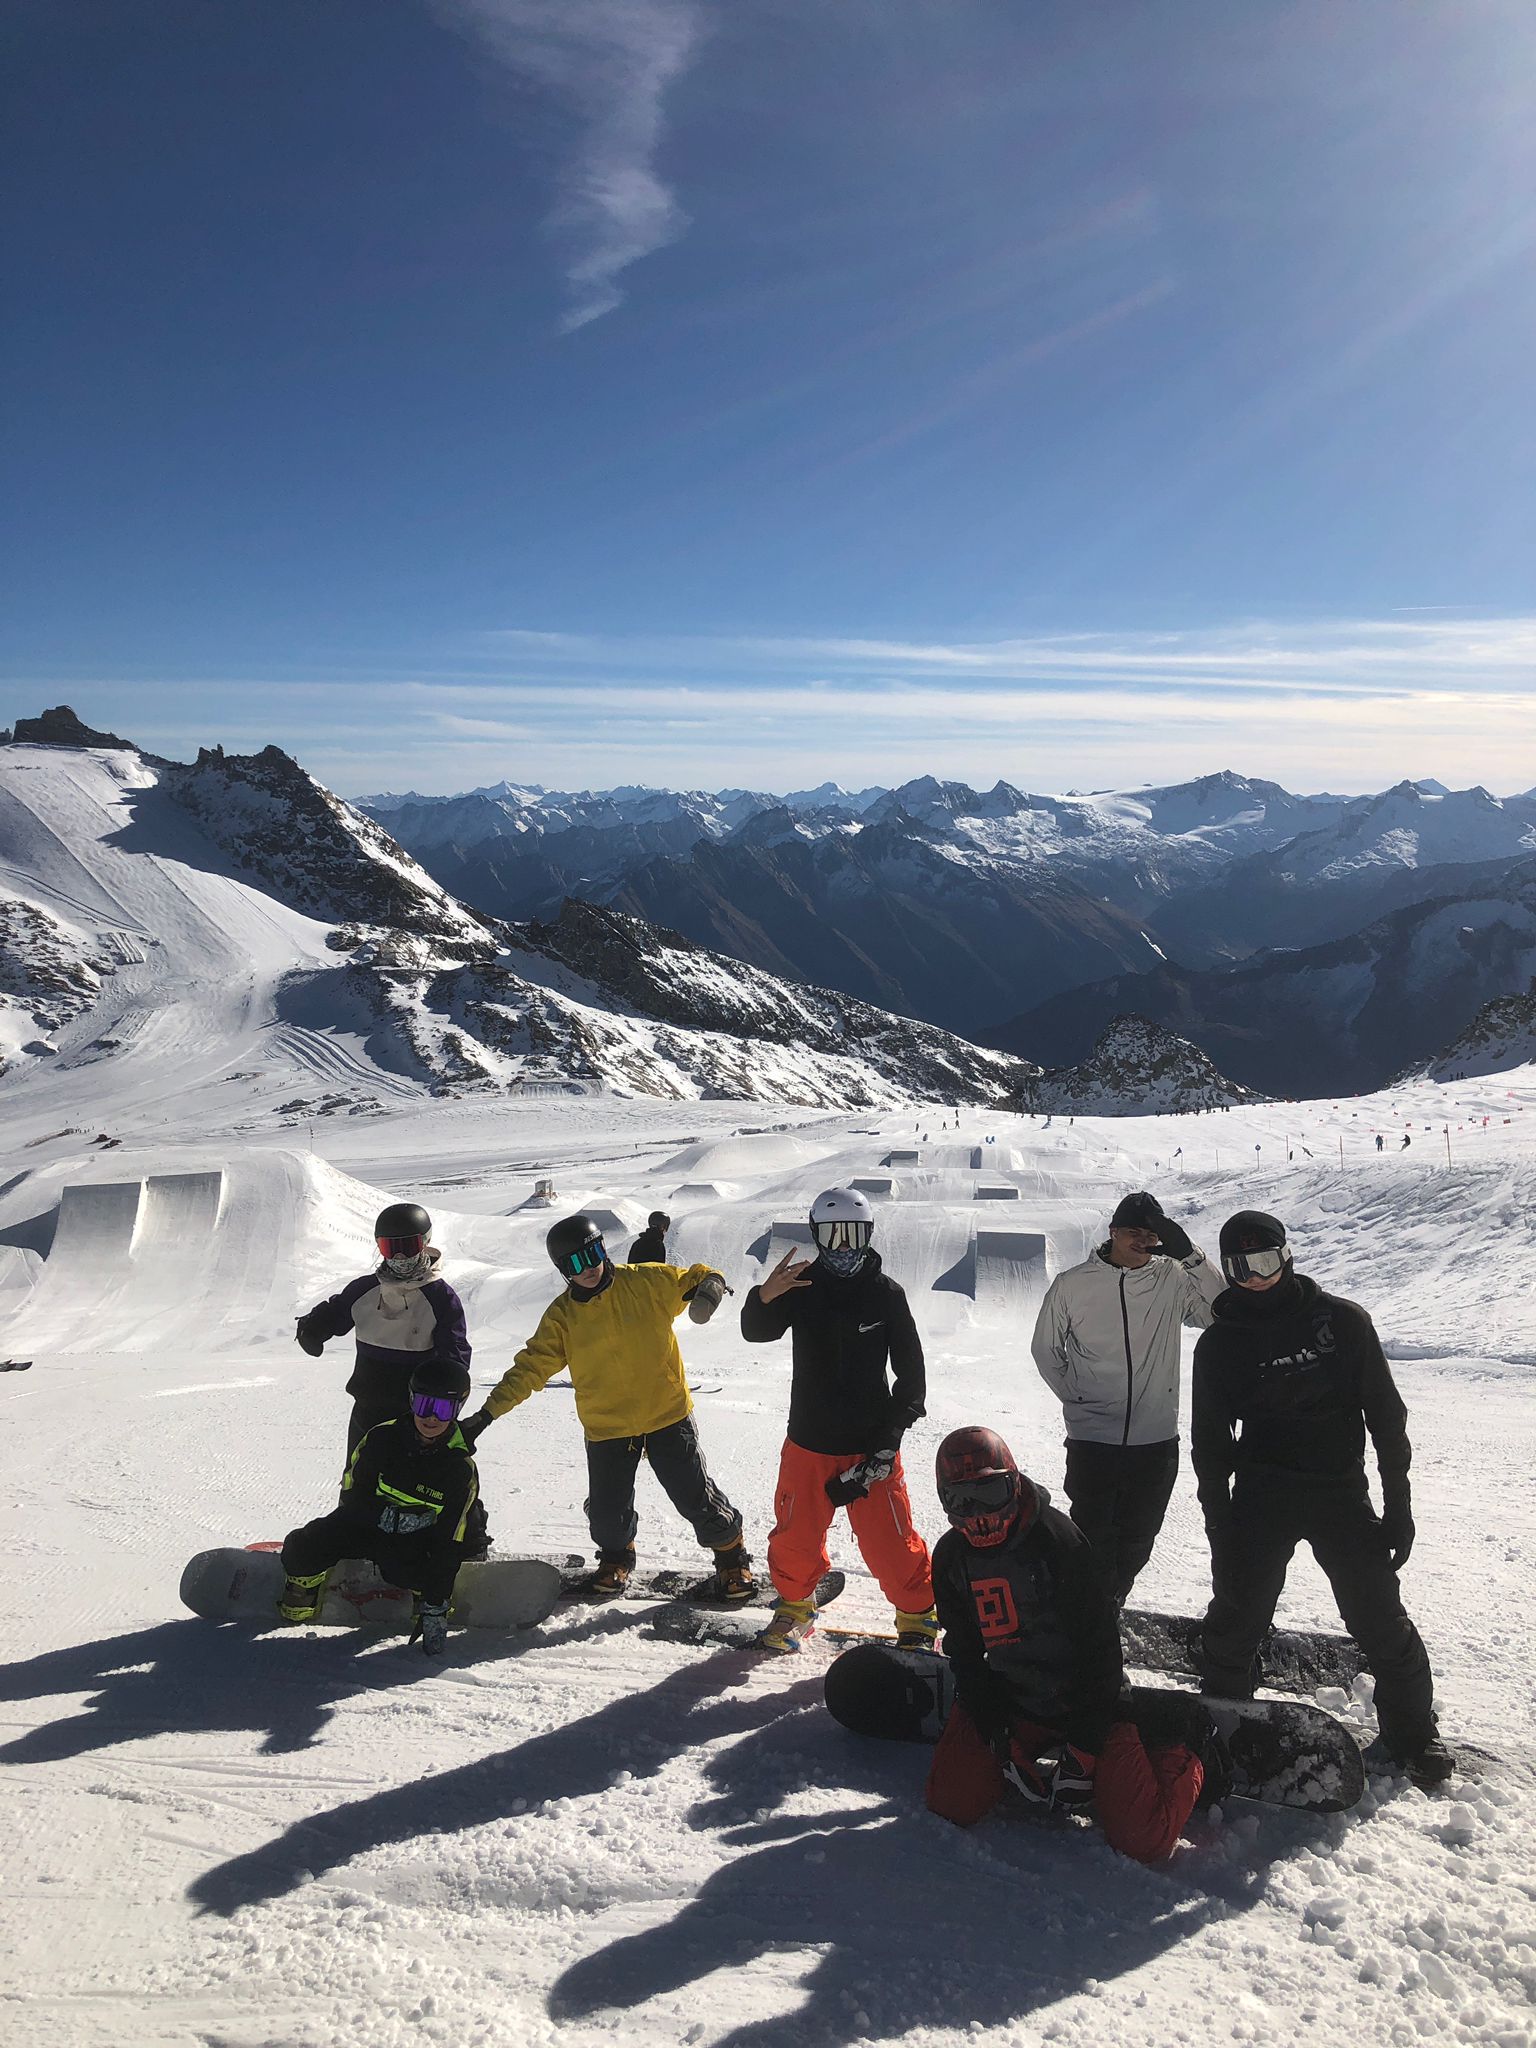 Družstvo snowboardistů našeho klubu zahájilo přípravu na ledovci